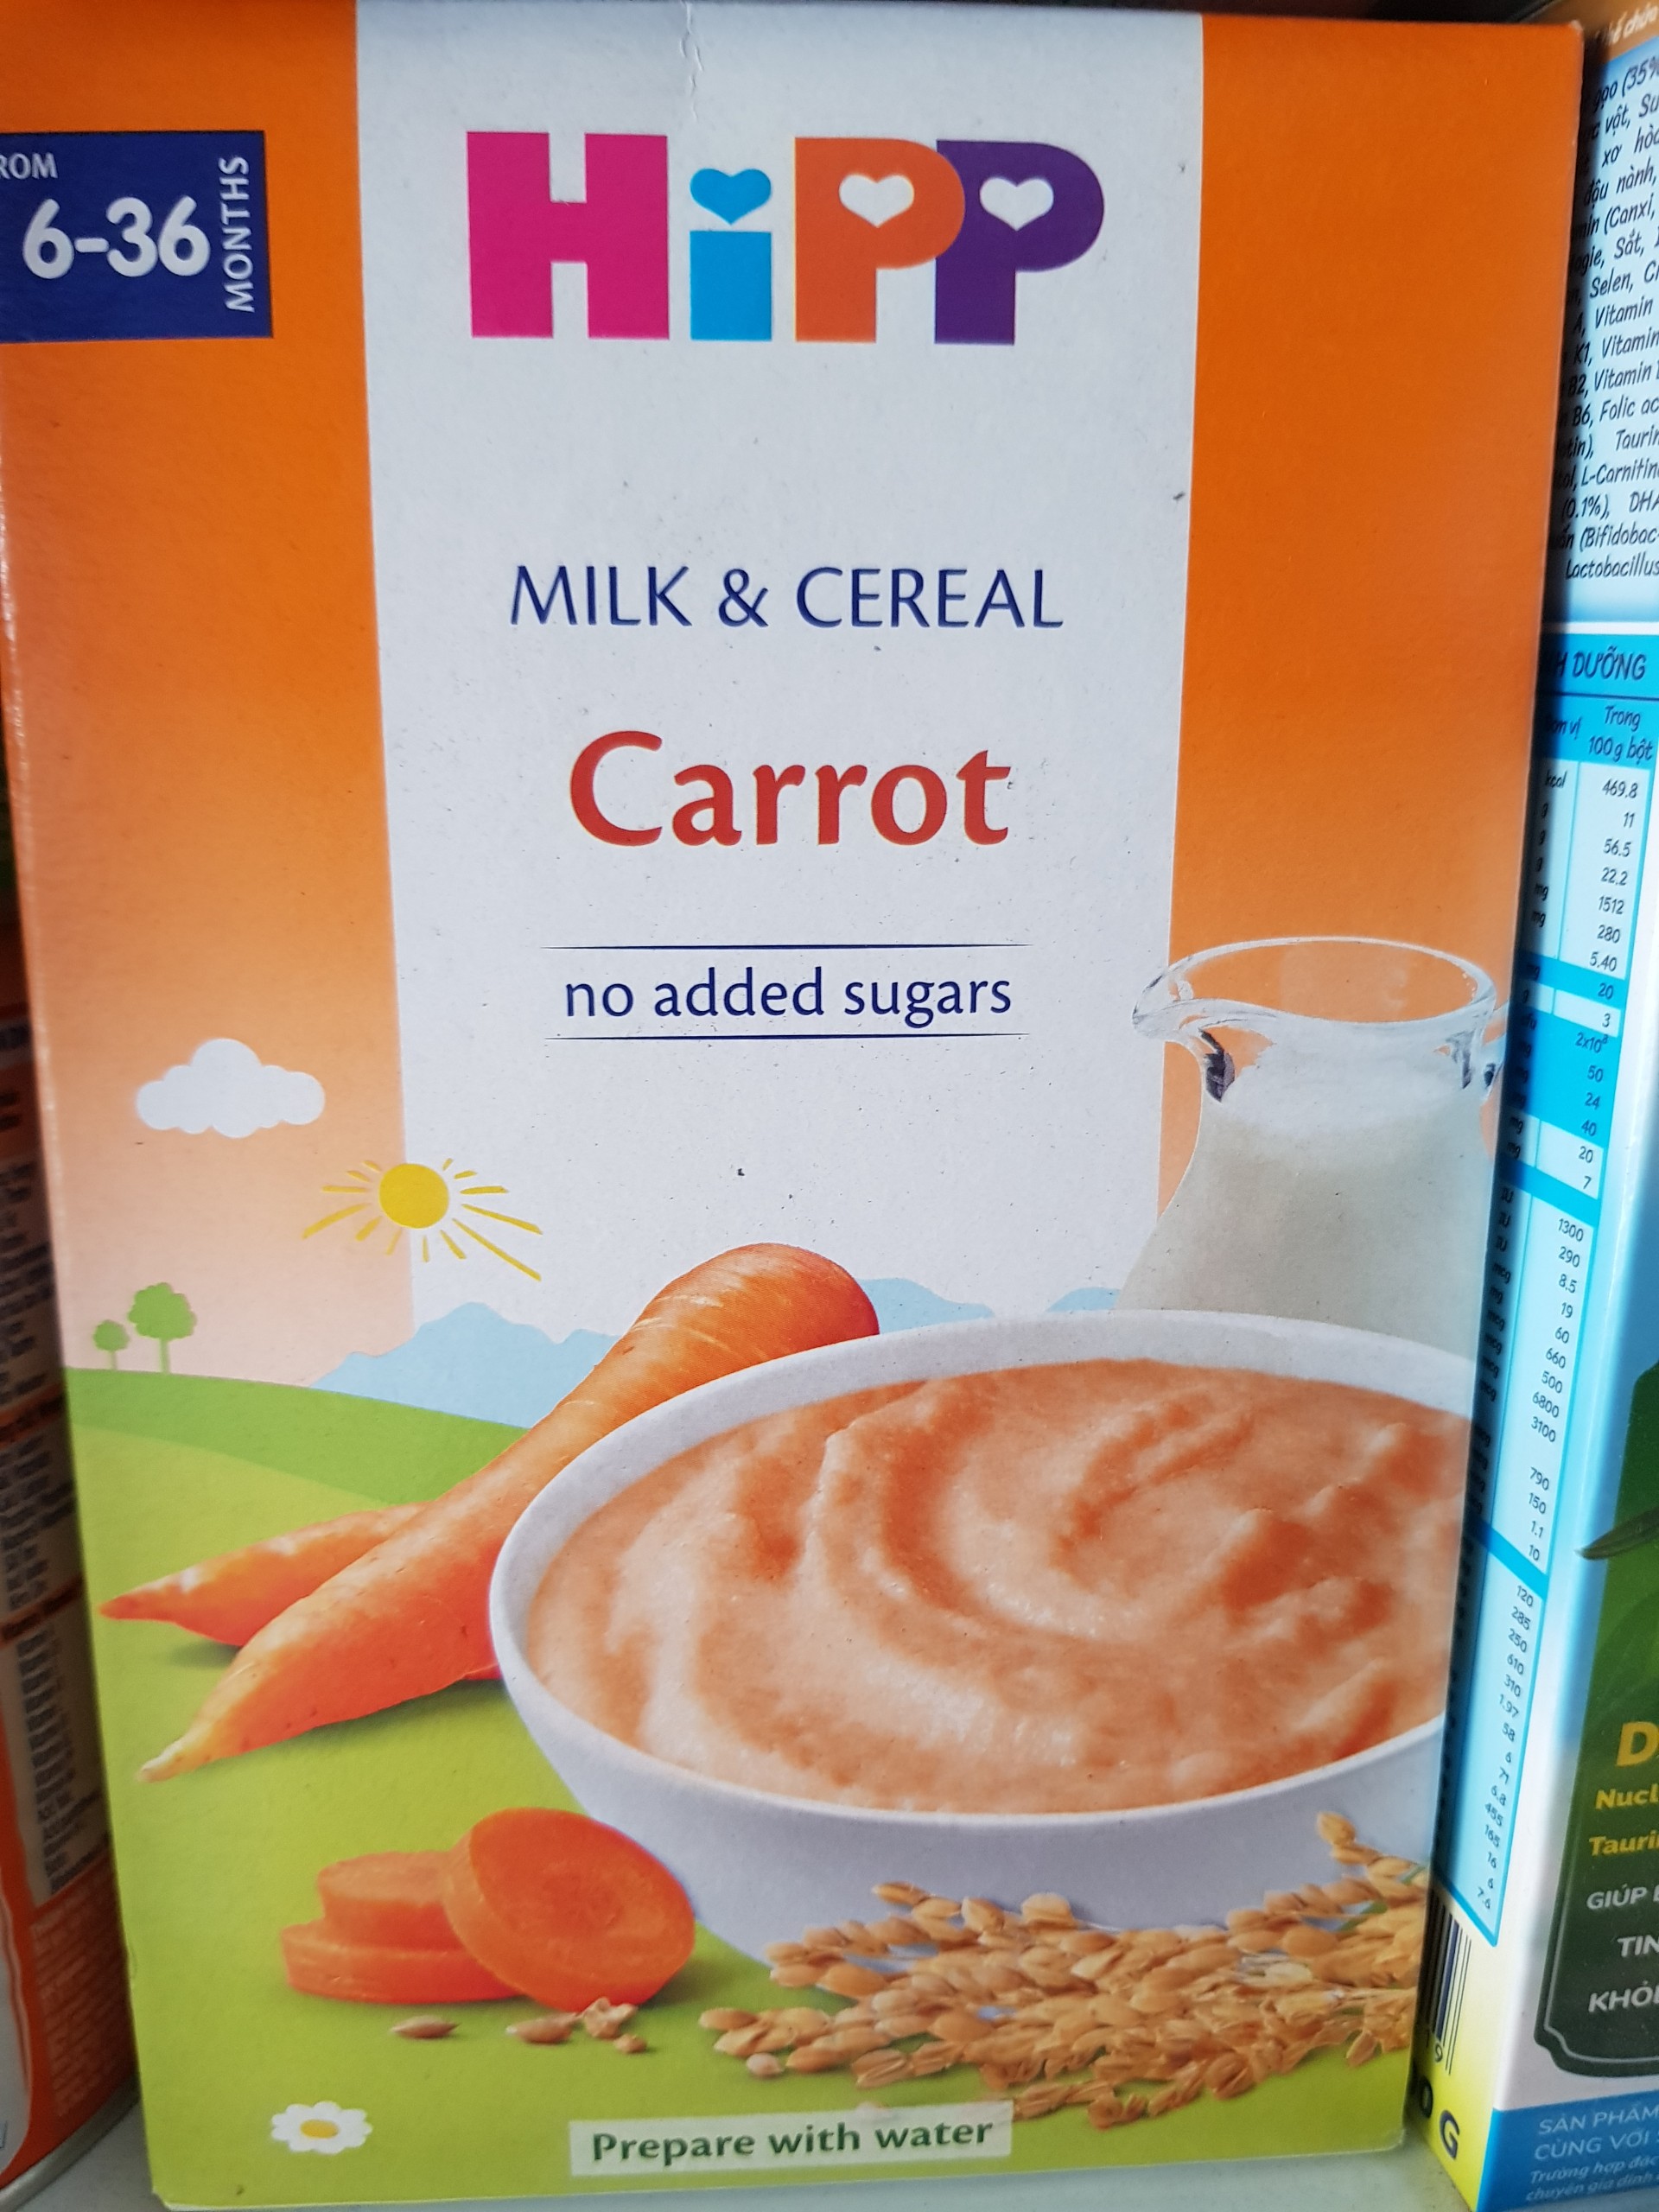 Bột ăn dặm HiPP 250g dinh dưỡng sữa và rau củ (Cà rốt)